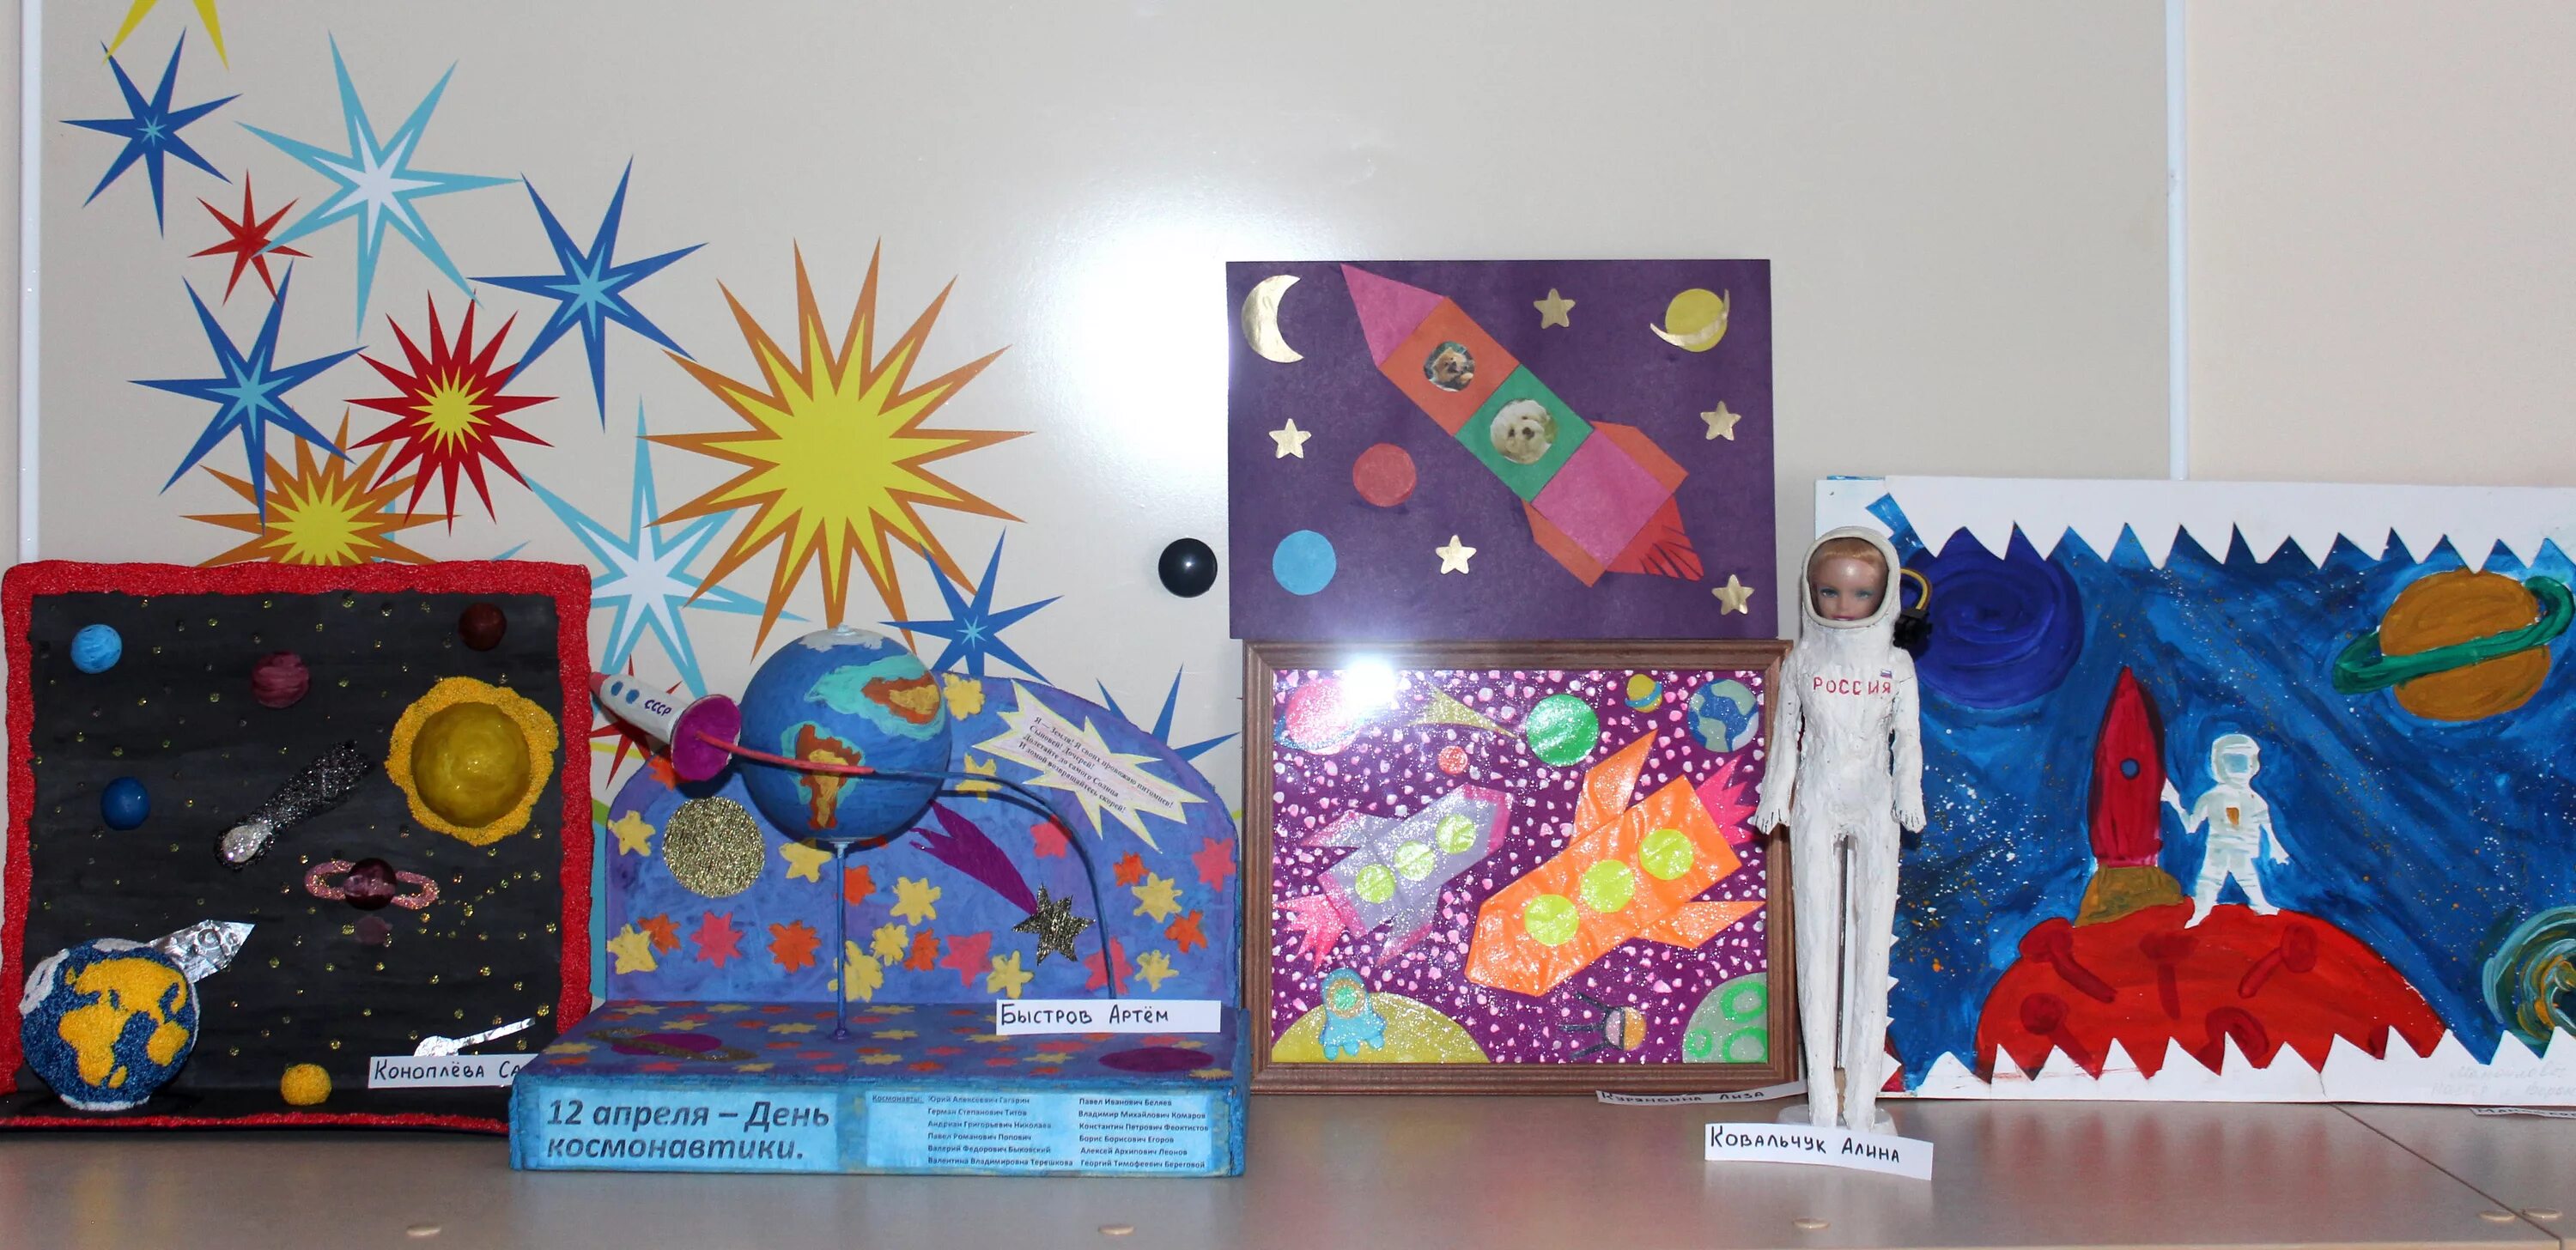 Конкурс поделок день космонавтики в детском саду. Поделка ко Дню космонавтики. Выставка ко Дню космонавтики в детском саду. Поделка ко Дню космонавтики в детский сад.